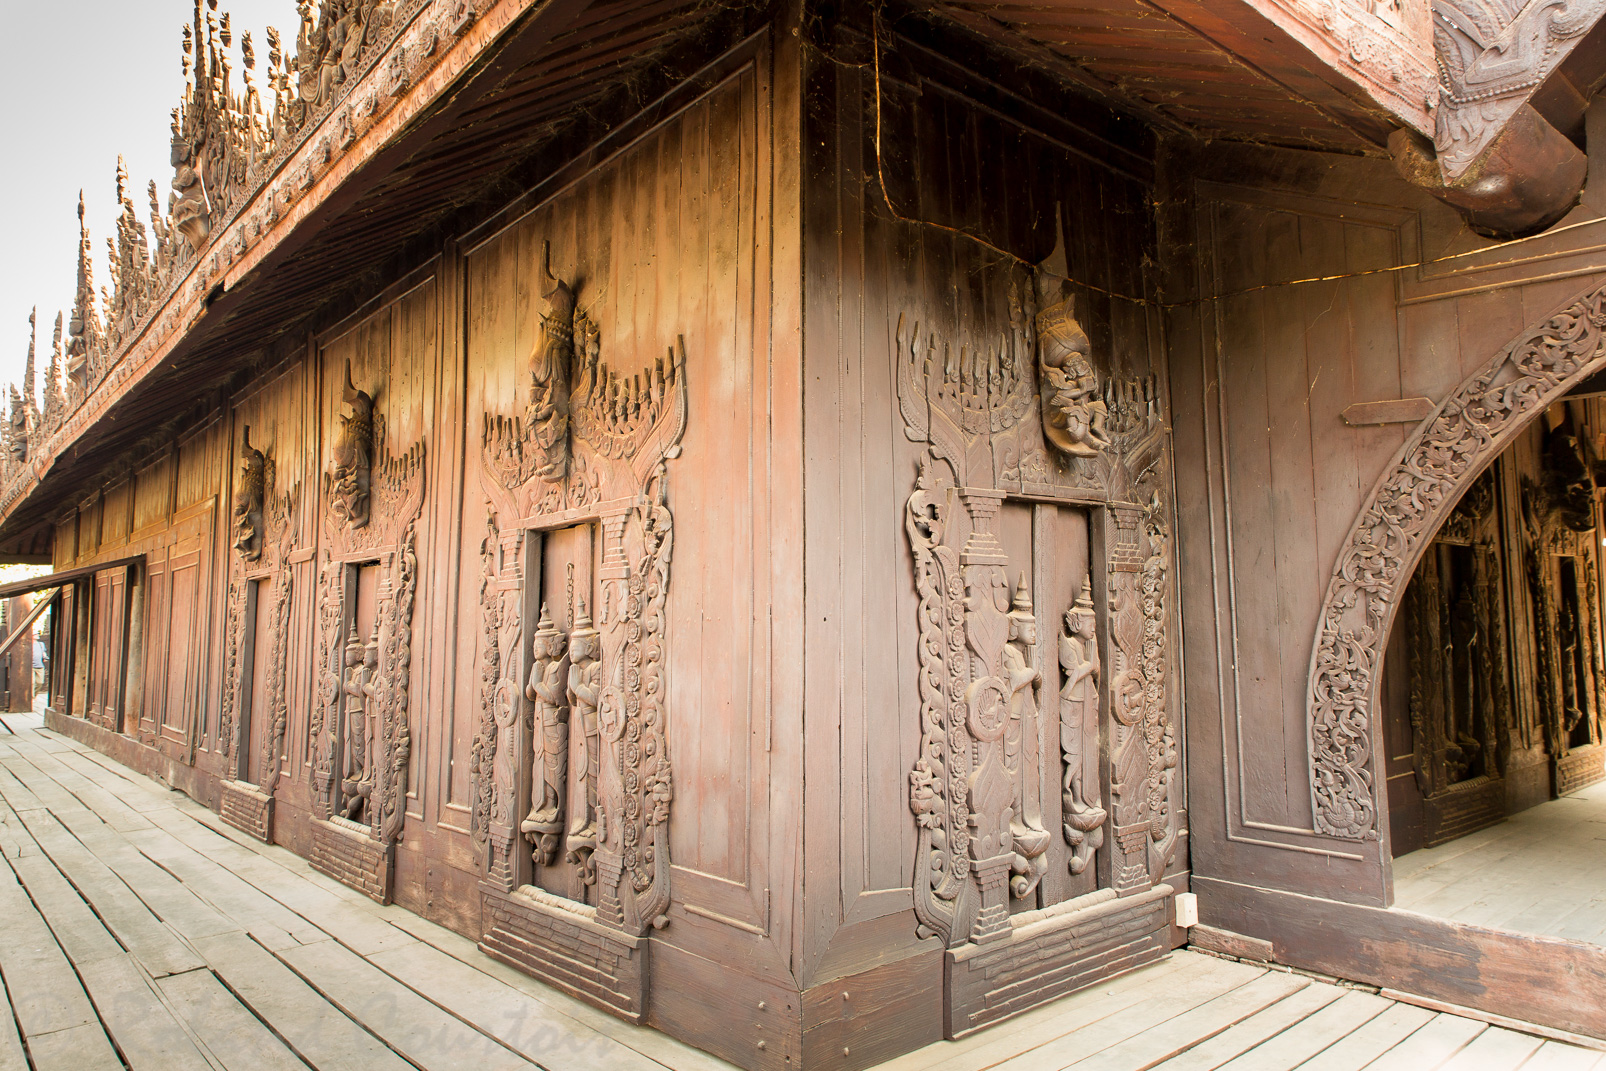 Monastère Shwe-nan-daw-Kyaung:  remarquable exemple de la sculpture traditionnelle sur bois de Mandalay.